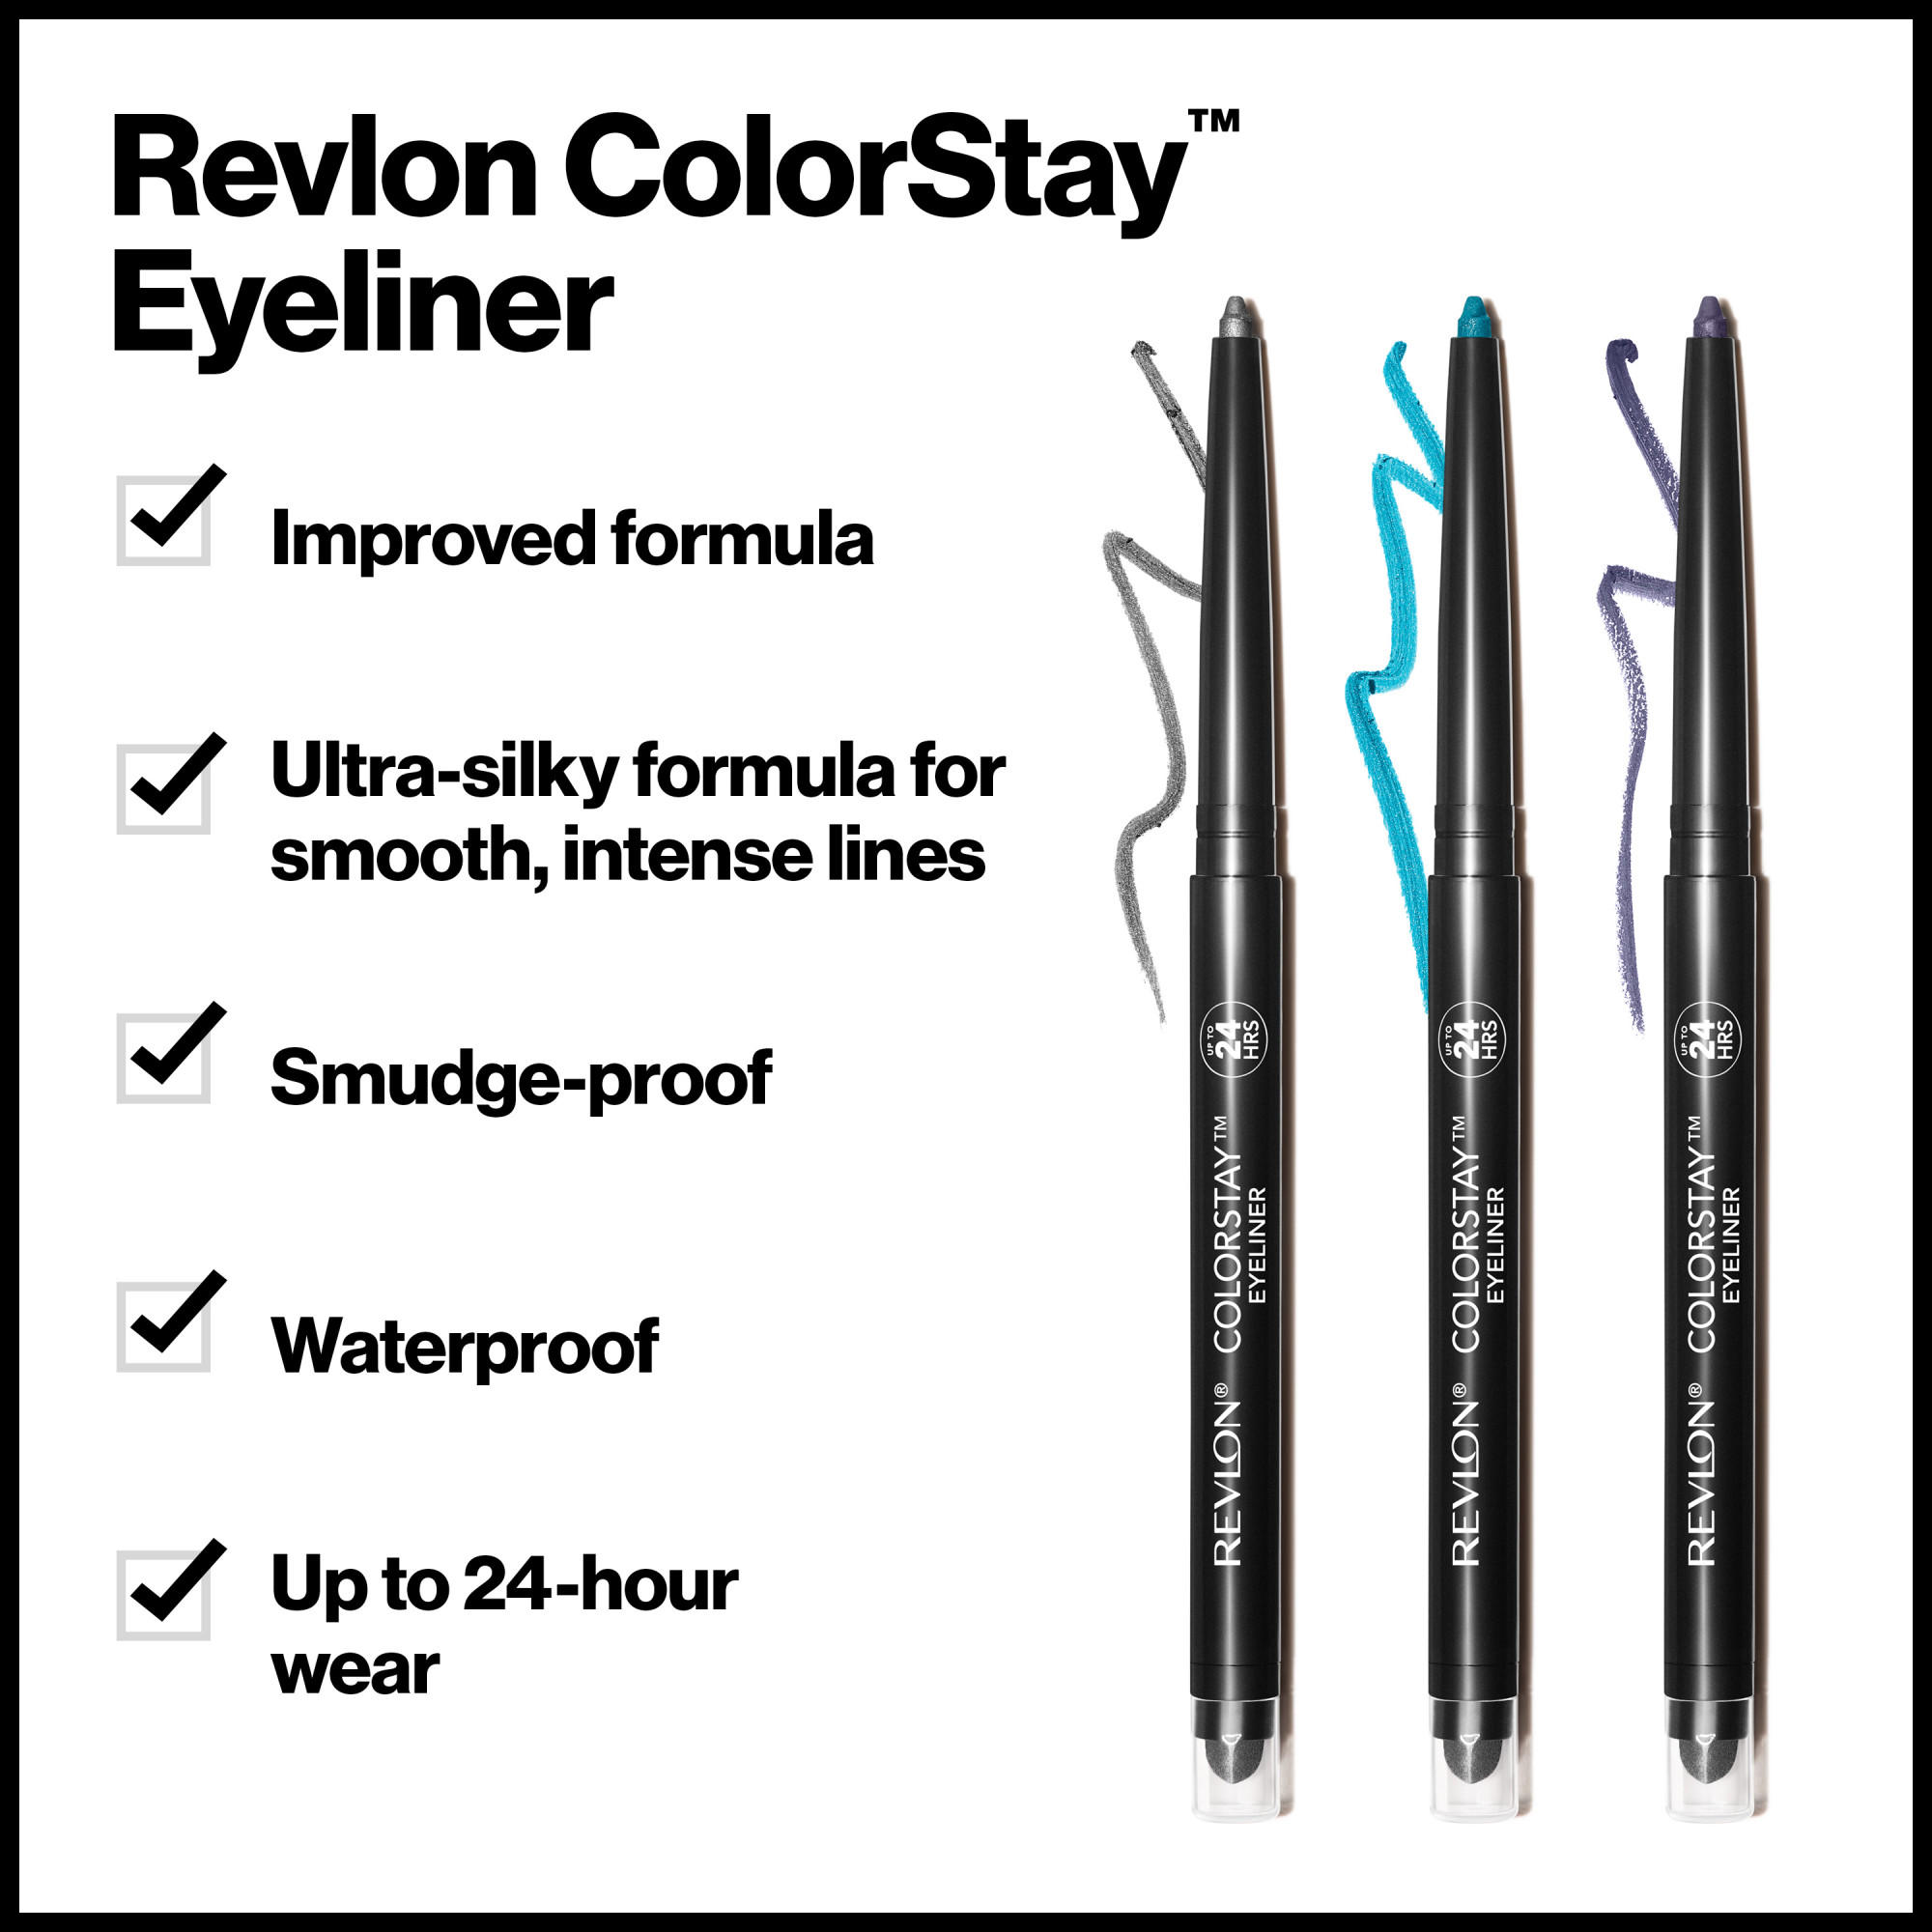 Revlon ColorStay Waterproof Eyeliner Pencil, 24HR Wear, Built-in Sharpener, 203 Brown, 0.01 oz - image 5 of 8